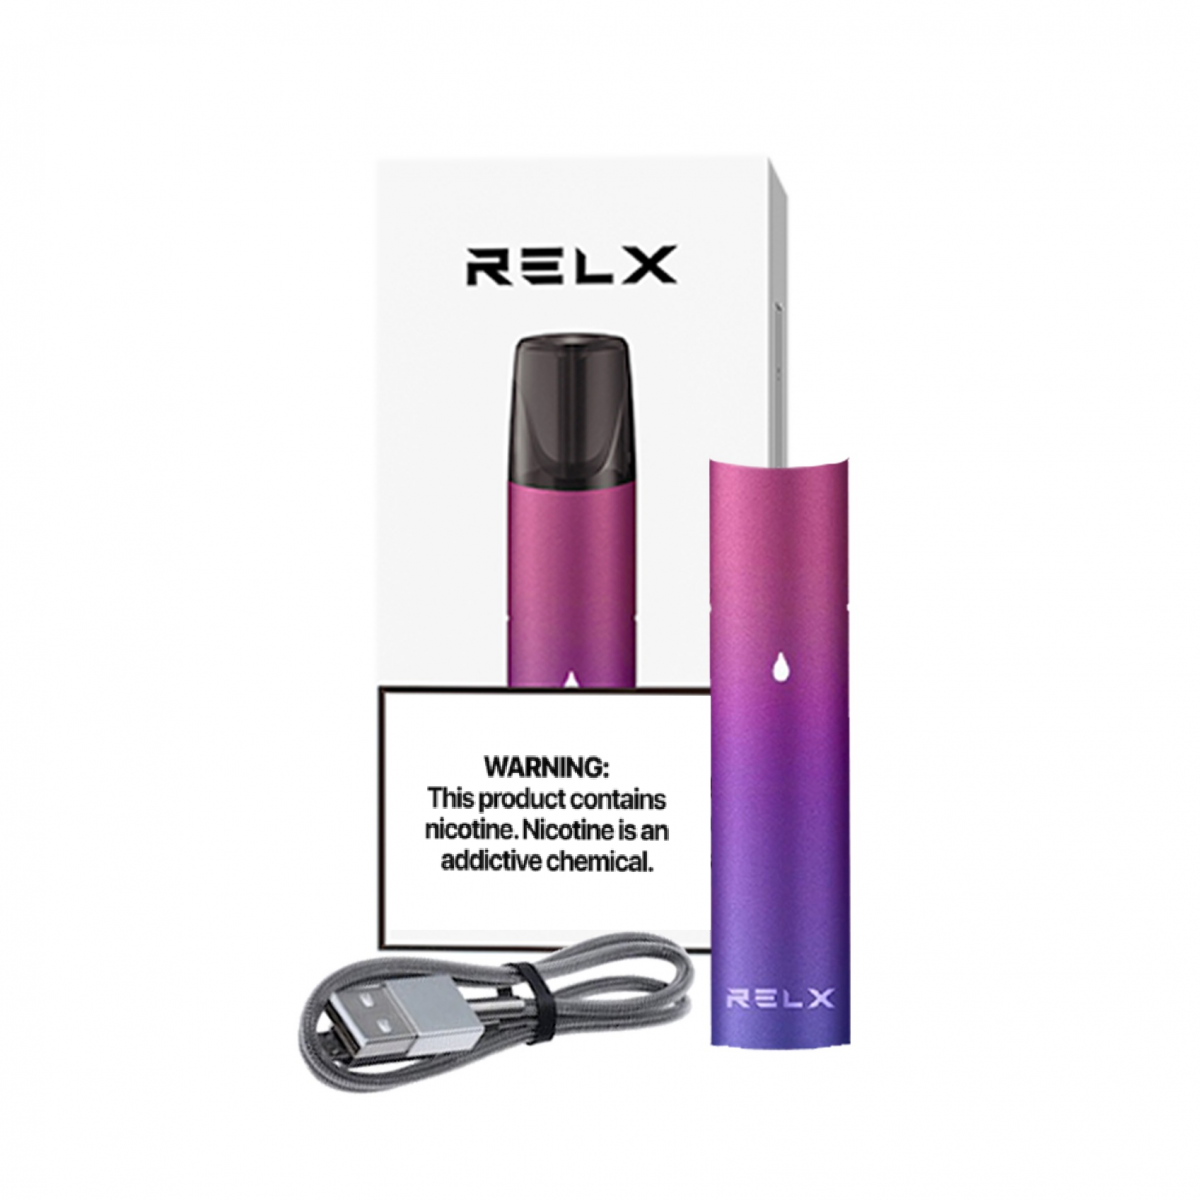 Relx Mystic Aurora Single Device Kit Không Kèm Đầu Pod giá rẻ nhất hcm tại vaporshop q4